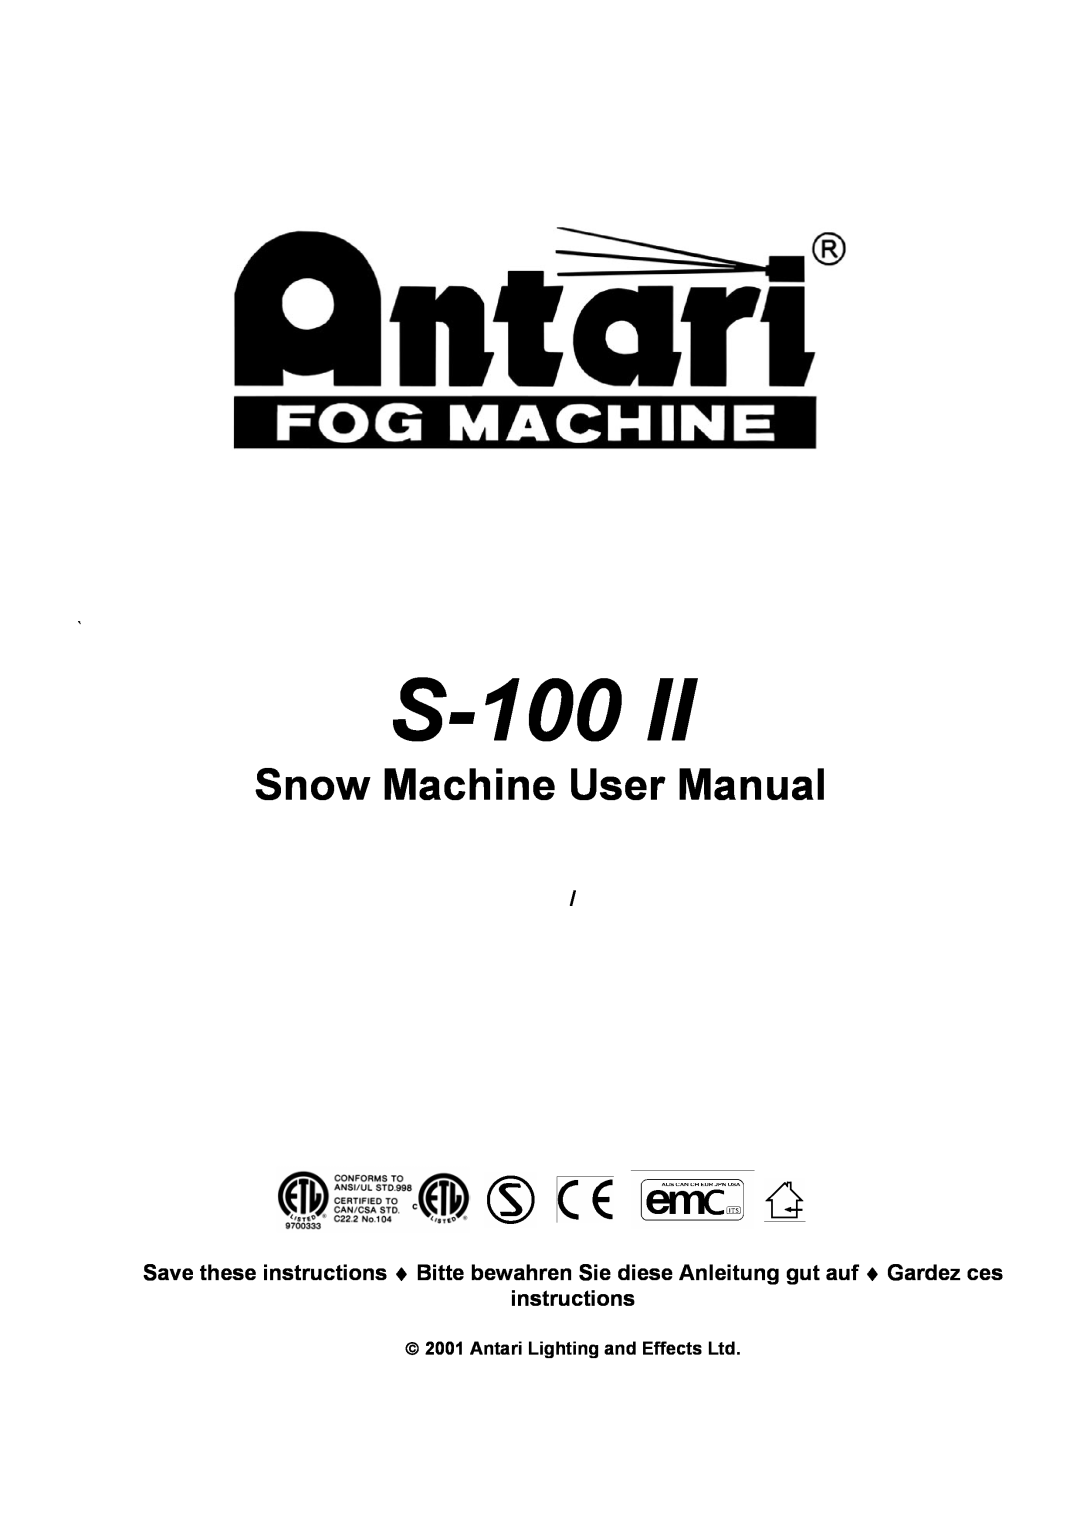 Elation Professional S-100 II user manual instructions, S-100II 